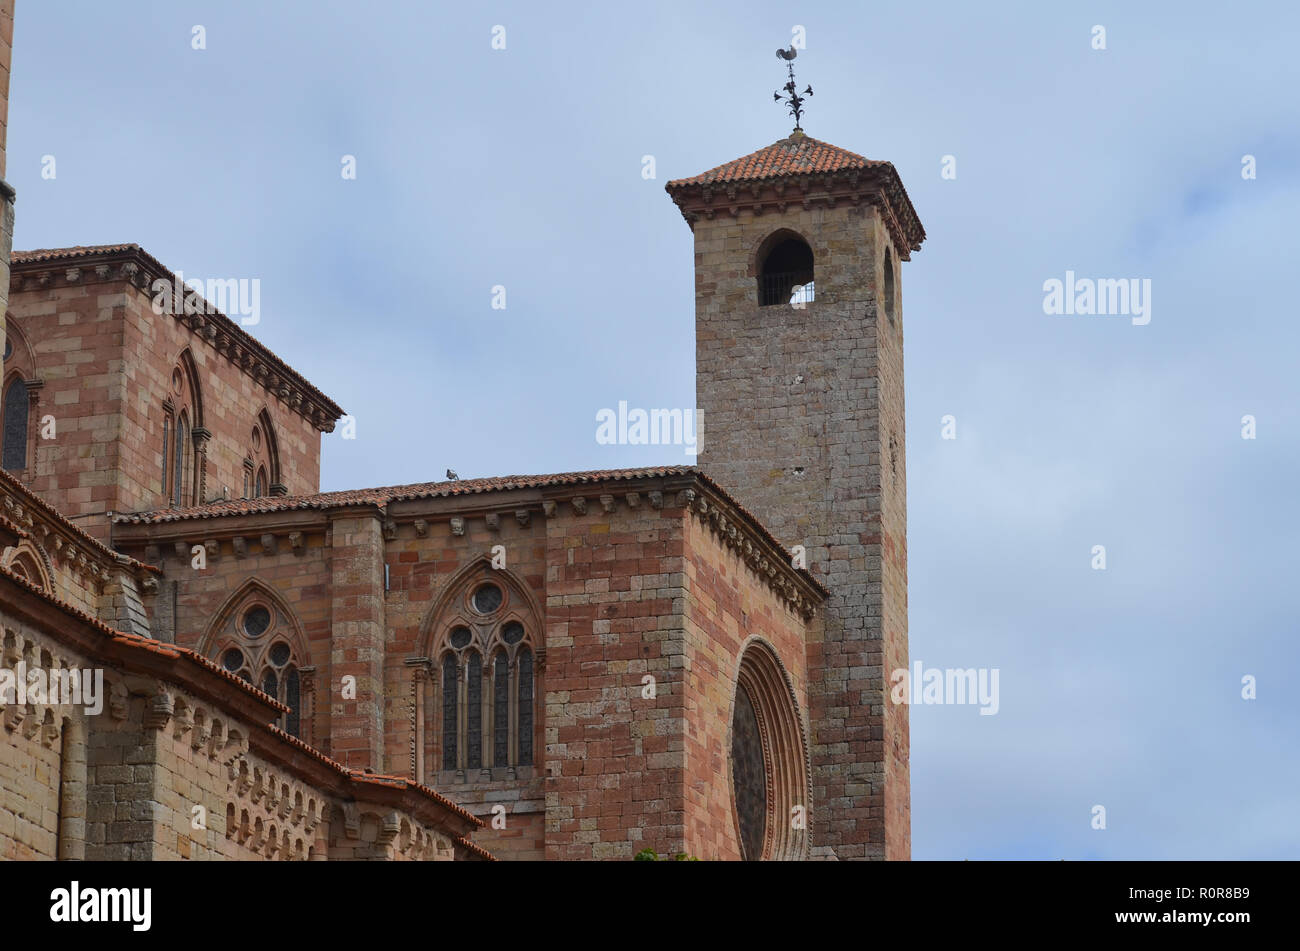 Dettagli architettonici del xv secolo cattedrale di Sigüenza, provincia di Guadalajara, Spagna Foto Stock